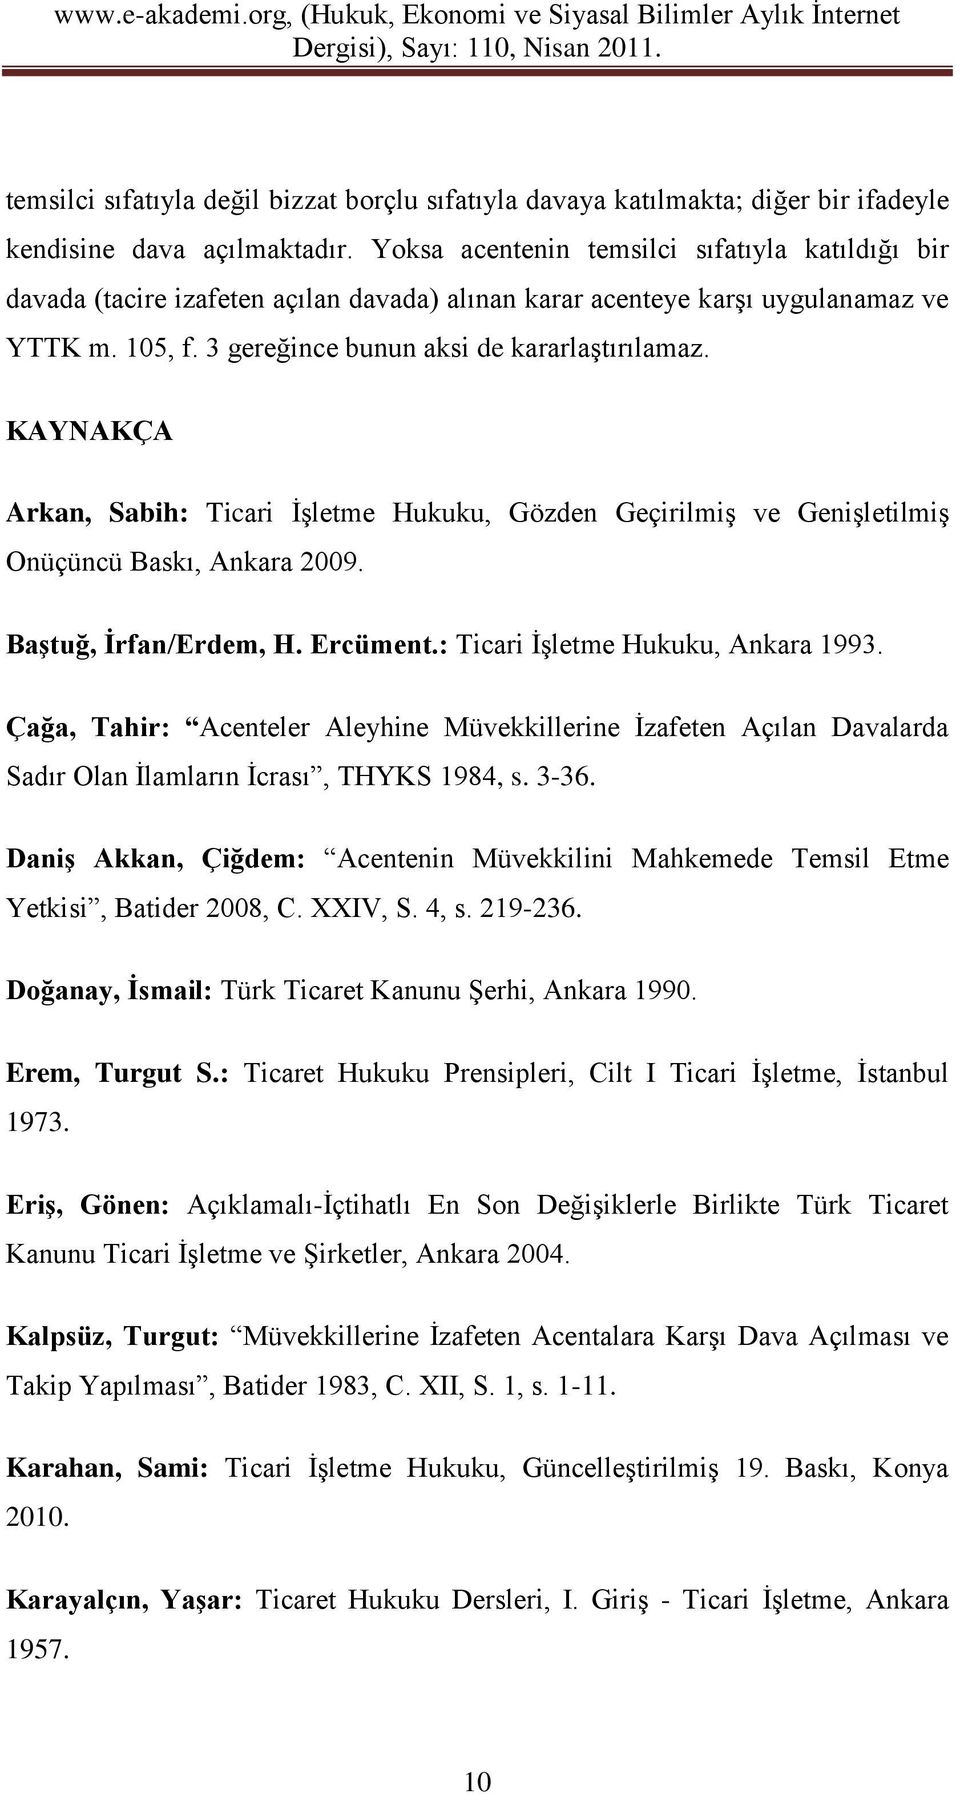 KAYNAKÇA Arkan, Sabih: Ticari İşletme Hukuku, Gözden Geçirilmiş ve Genişletilmiş Onüçüncü Baskı, Ankara 2009. Baştuğ, İrfan/Erdem, H. Ercüment.: Ticari İşletme Hukuku, Ankara 1993.